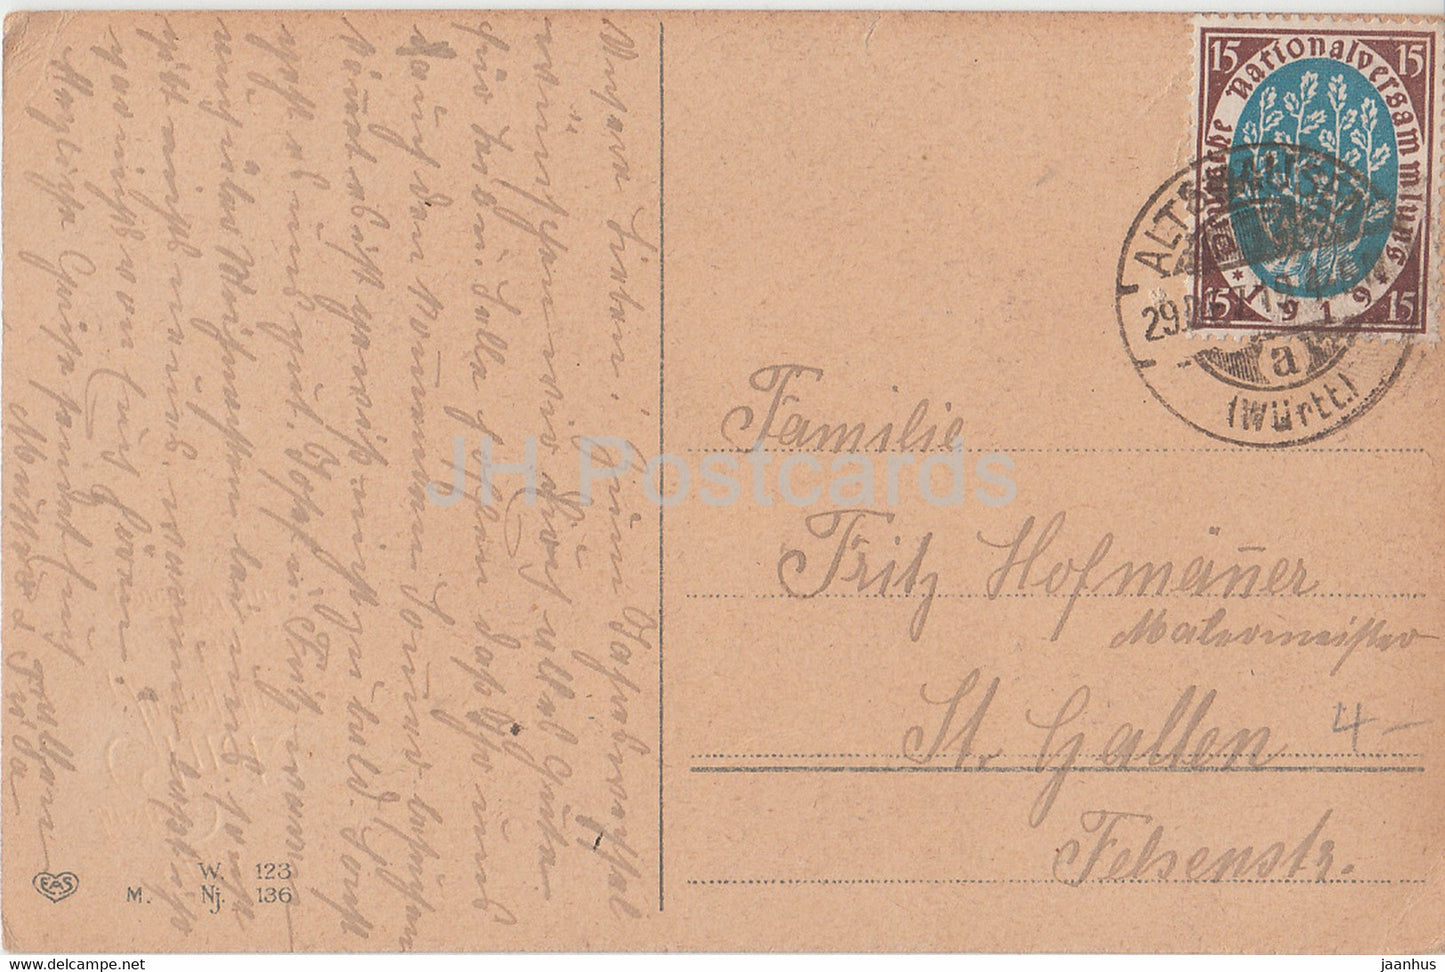 Carte de vœux du Nouvel An - Die Gluckwunsche zum Neuen Jahre - vue sur la ville - EAS 136 - carte postale ancienne - 1919 - Allemagne - utilisé